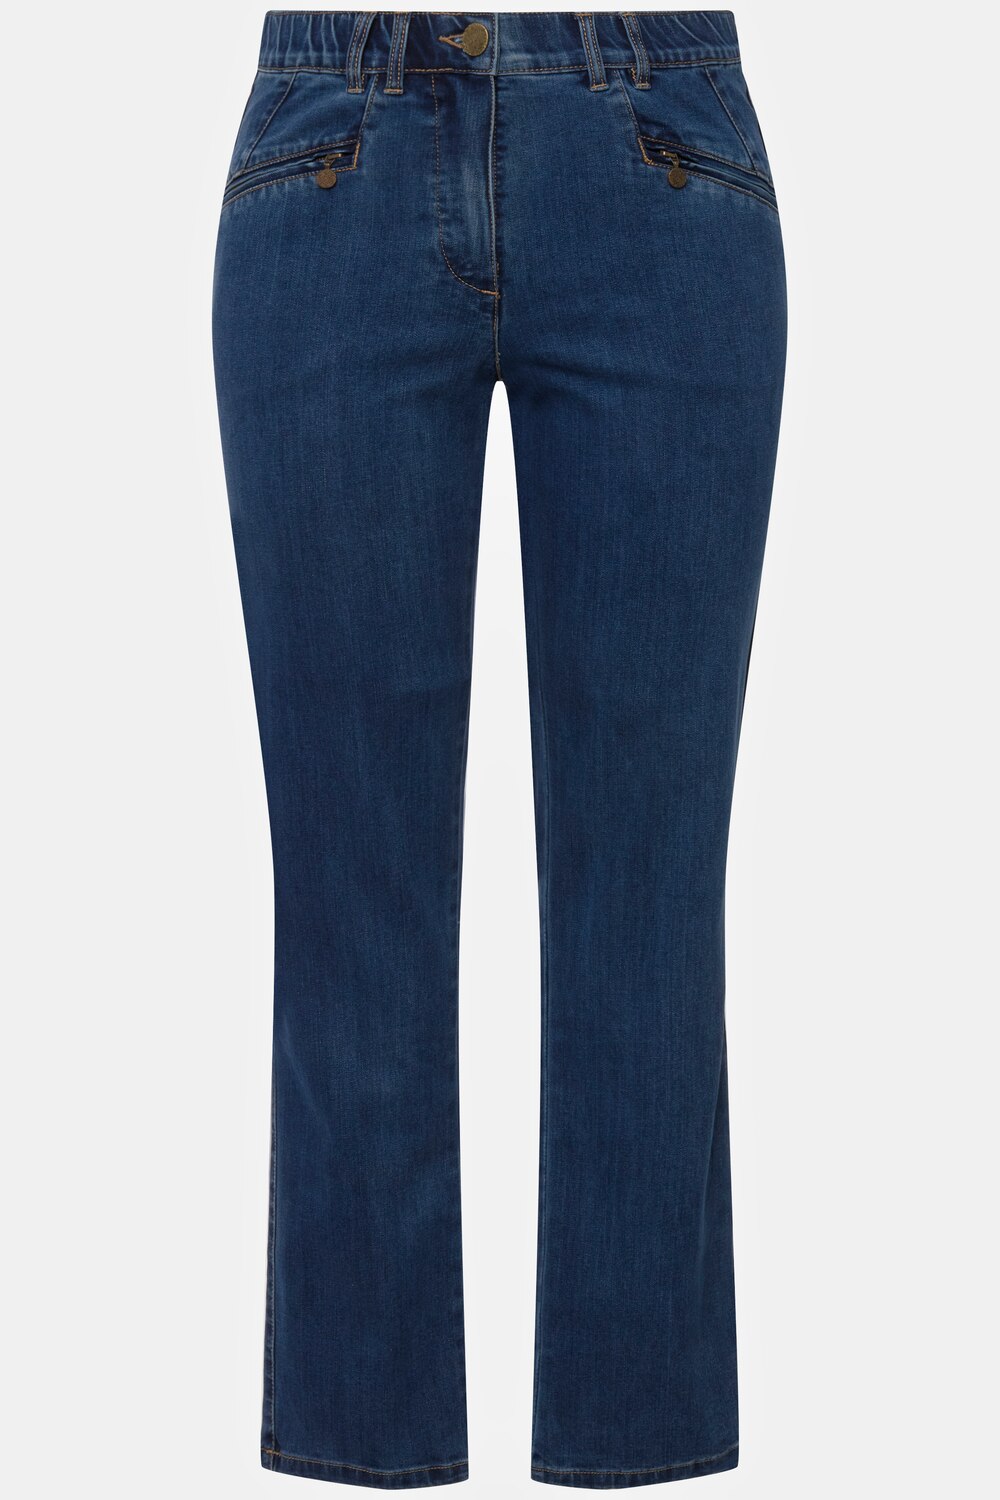 Grote Maten jeans Mony, Dames, blauw, Maat: 108, Katoen/Polyester/Viscose, Ulla Popken